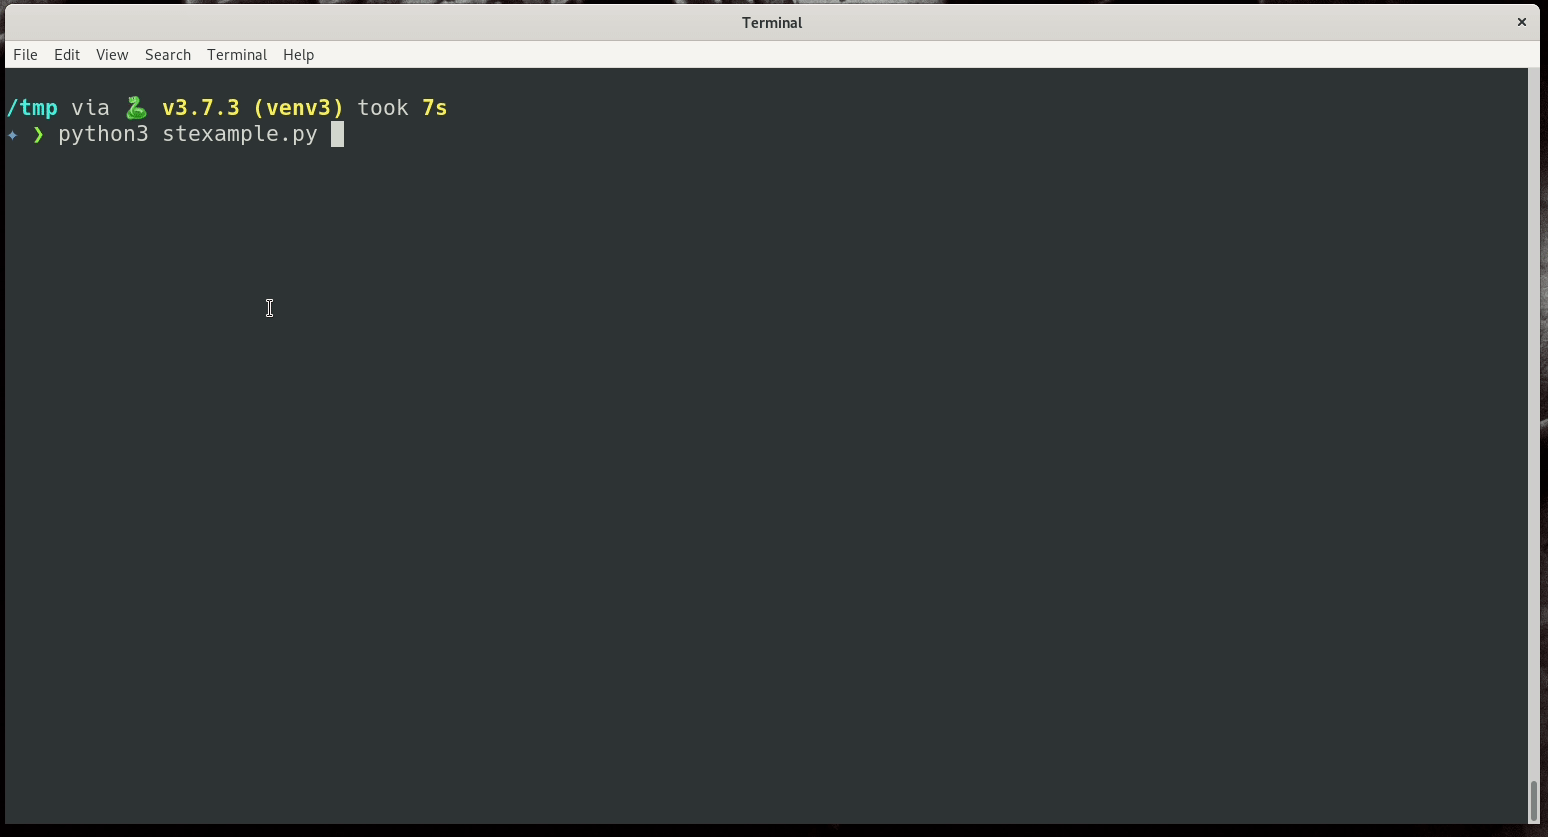 demo code running